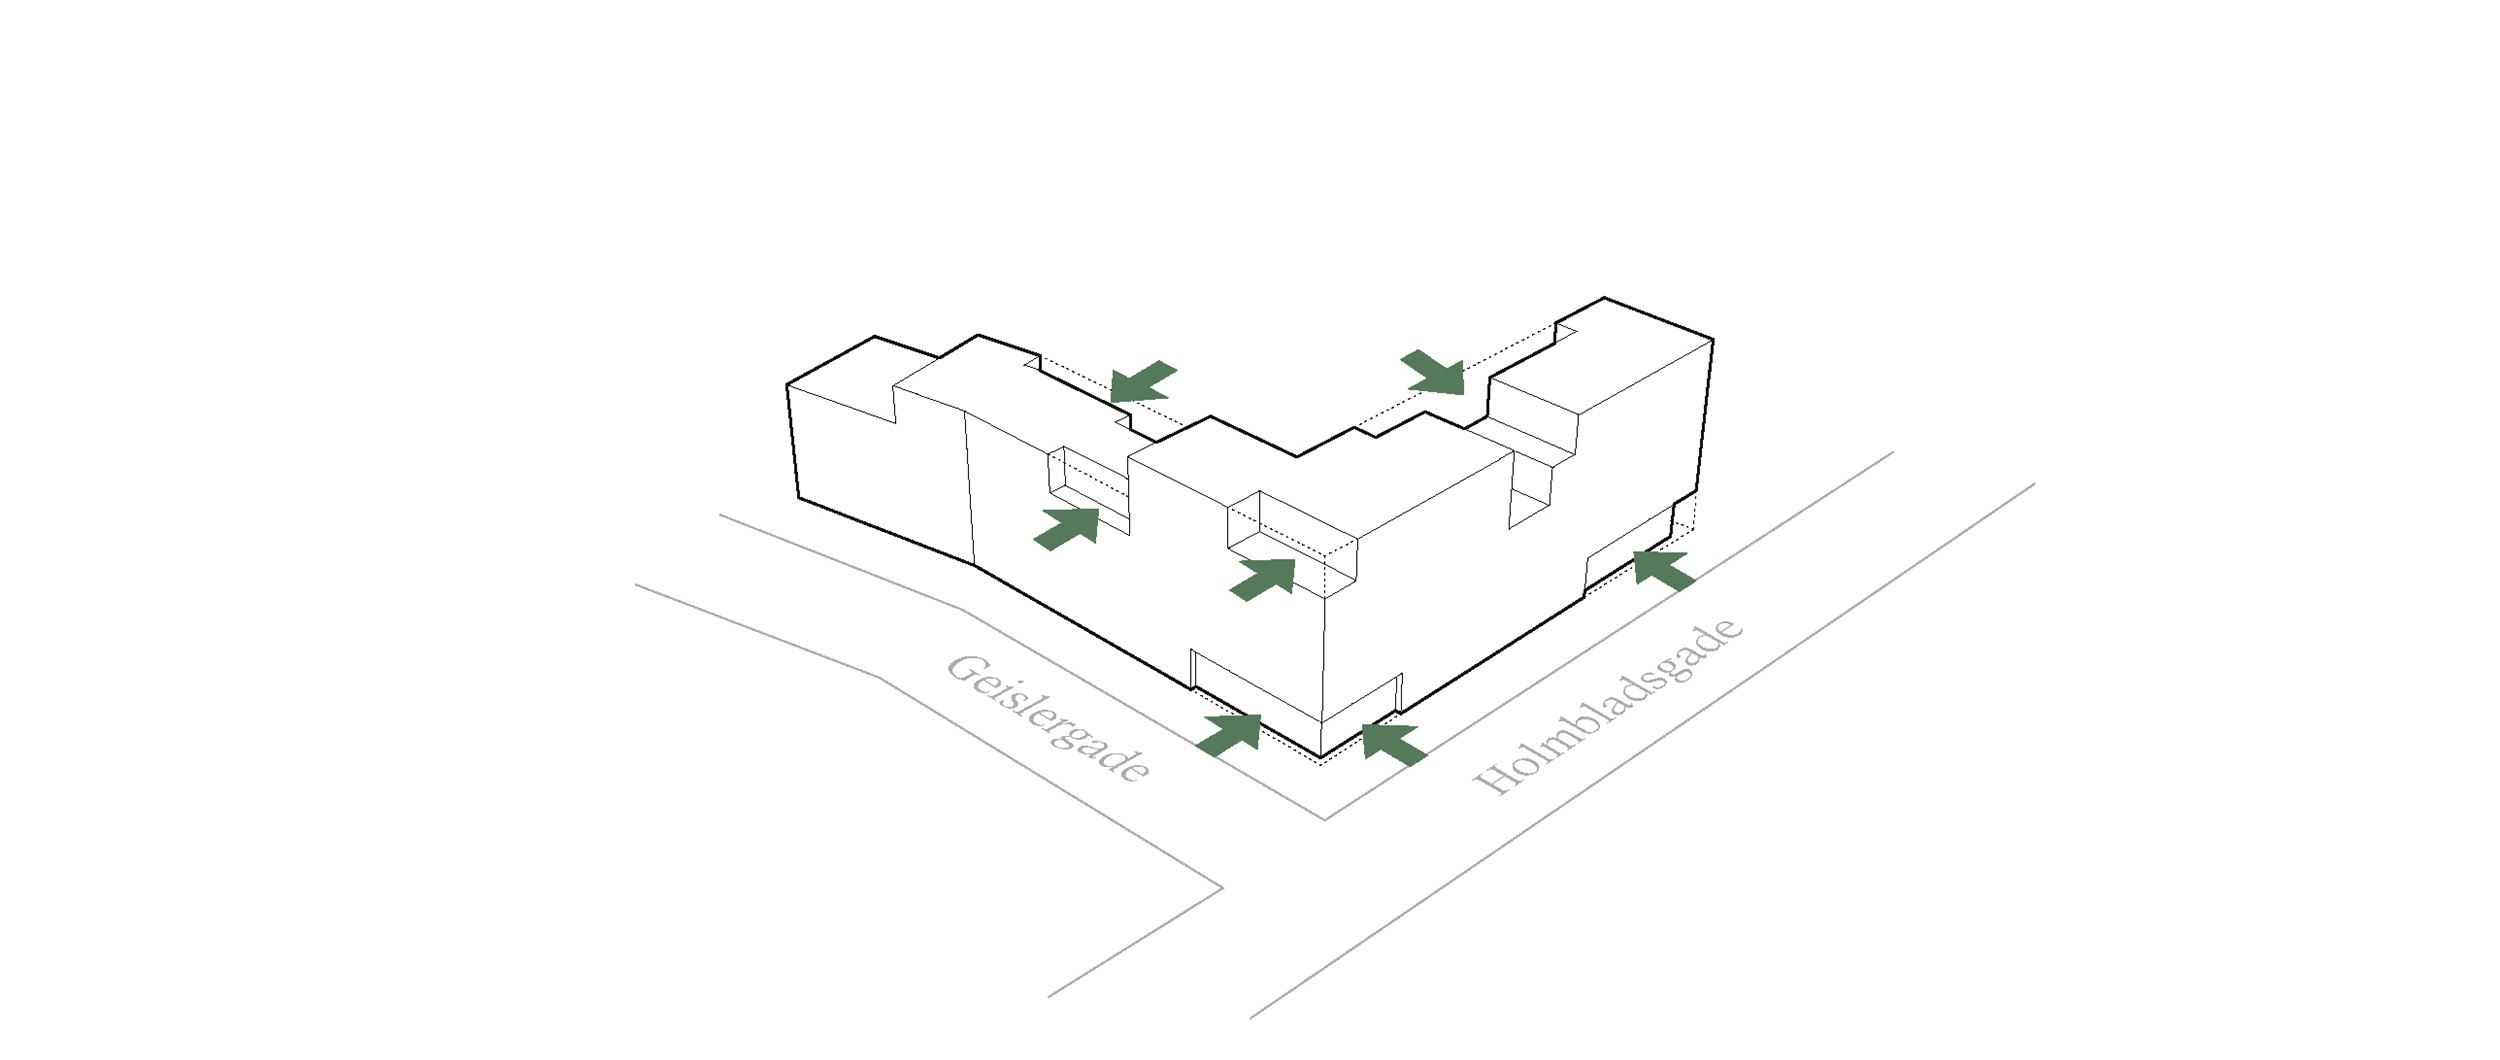 Terrasser markerer sig arkitektonisk flot i byggeriet ved et indryk, det samme gælder erhvervslokalerne i bunden.